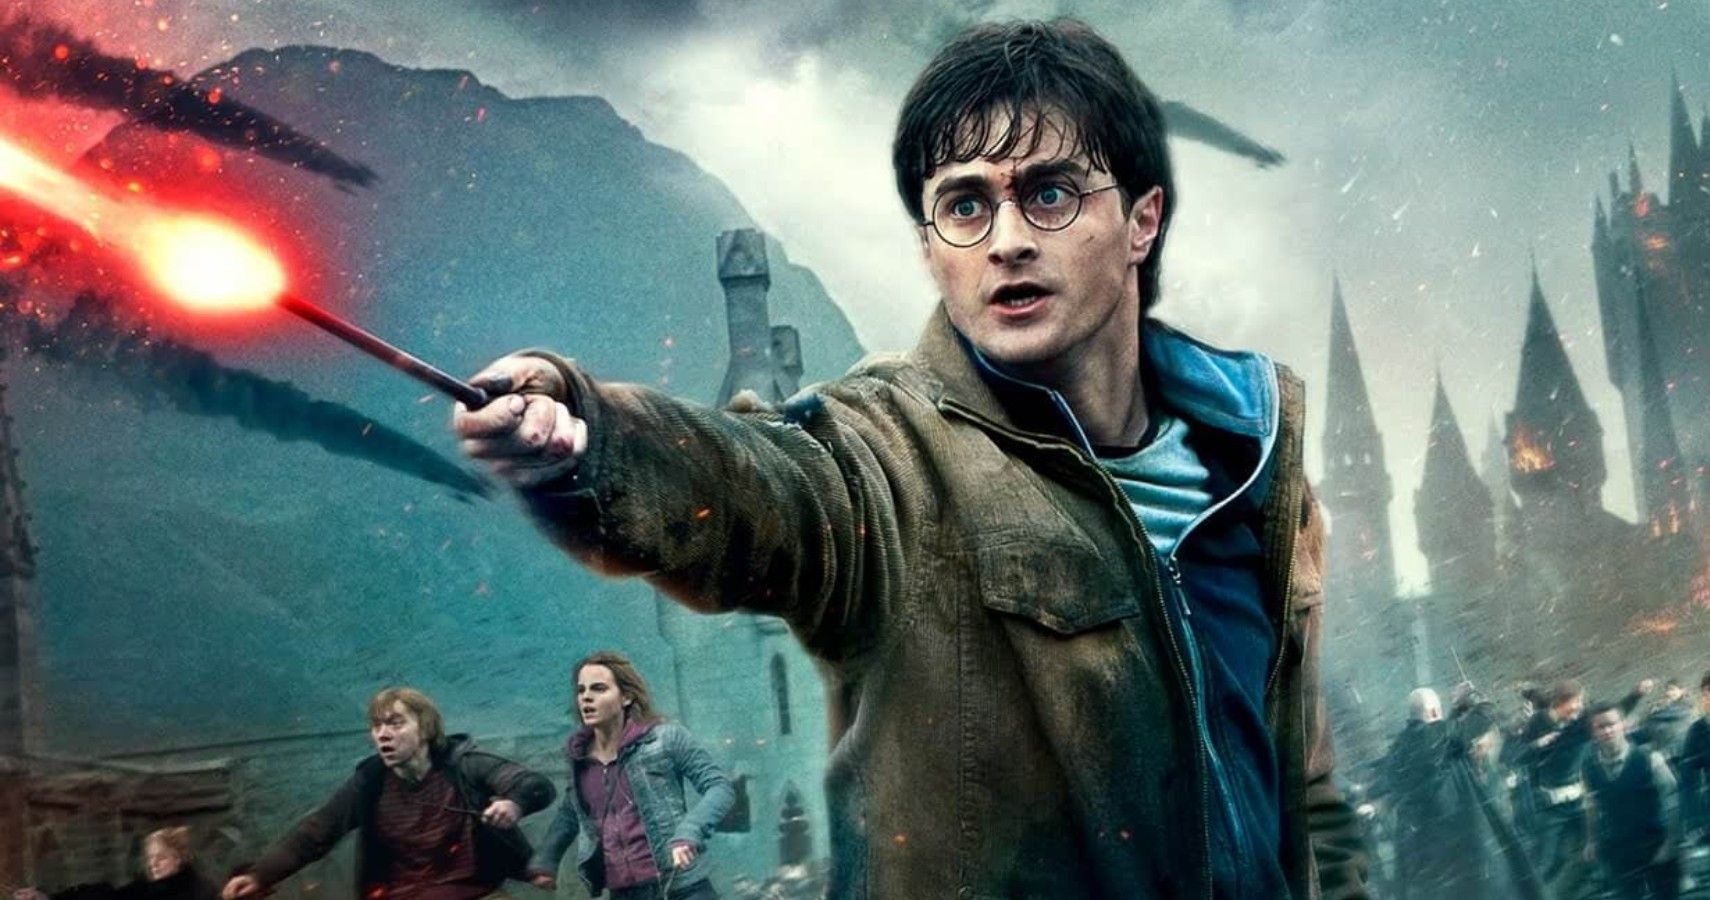 Harry Potter fan mistakes fanfic for 'Order of Phoenix